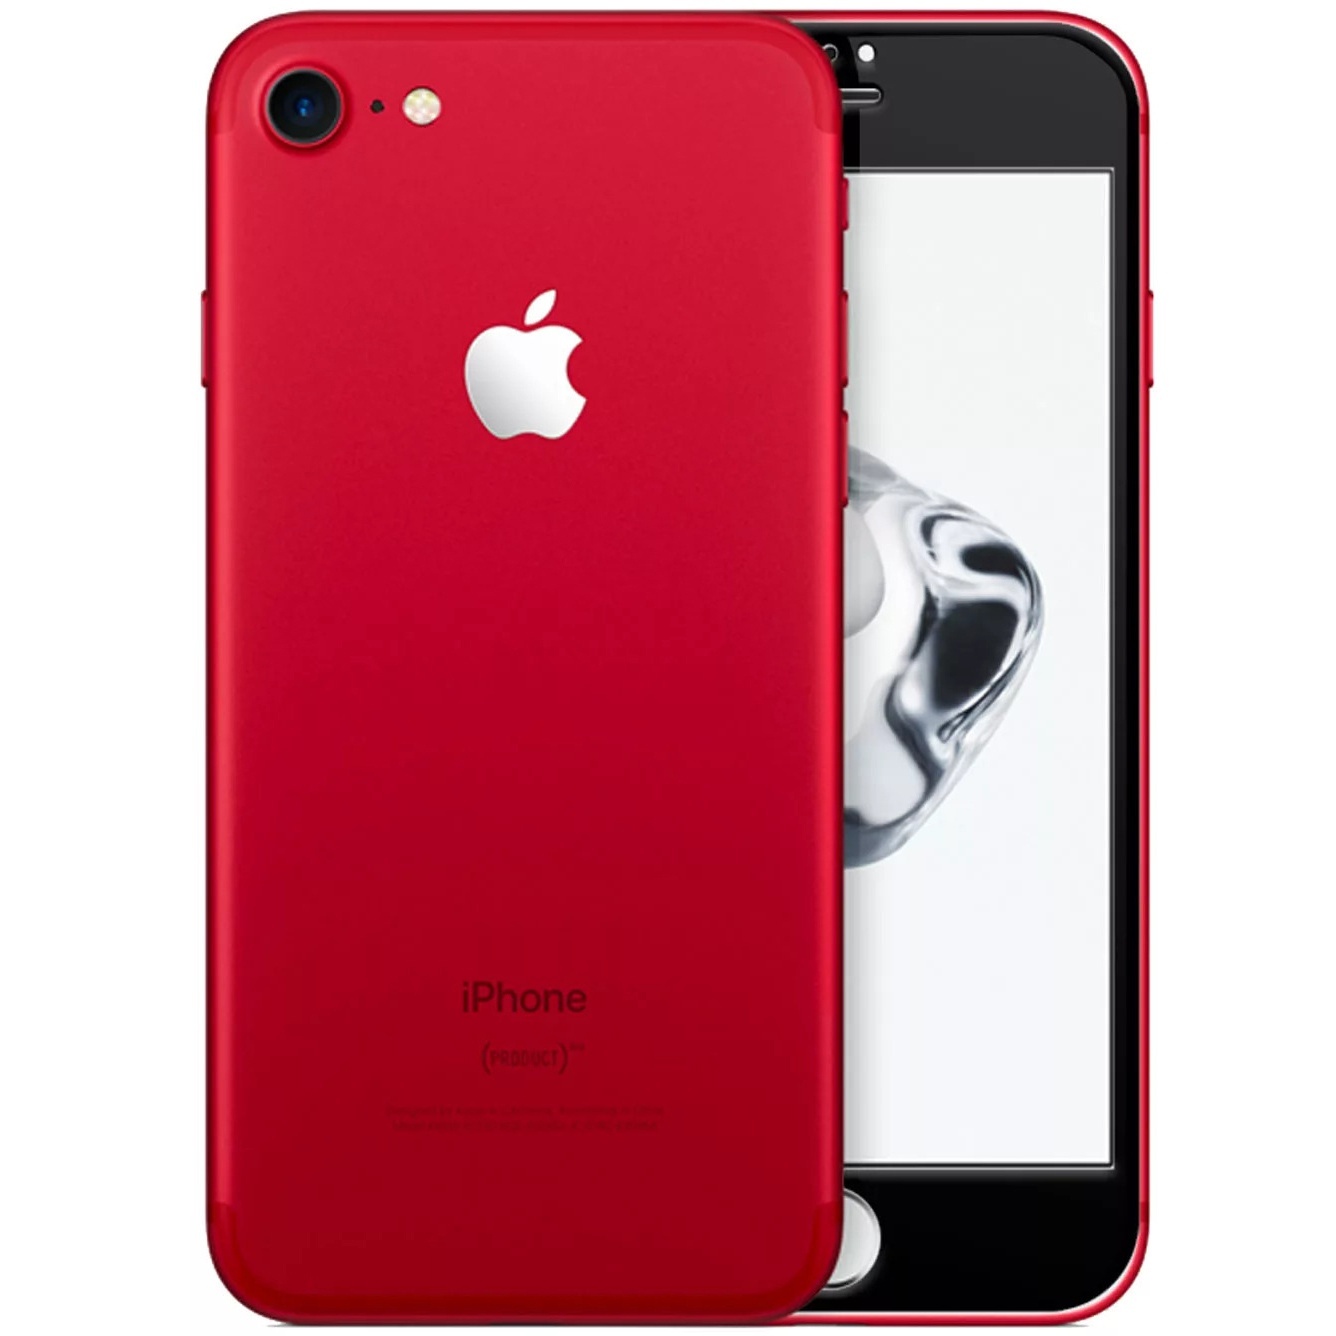 Apple iPhone 7 Màu Đỏ, Đen, Trắng, Vàng, Bạc, Hồng phiên bản 32Gb, 128Gb